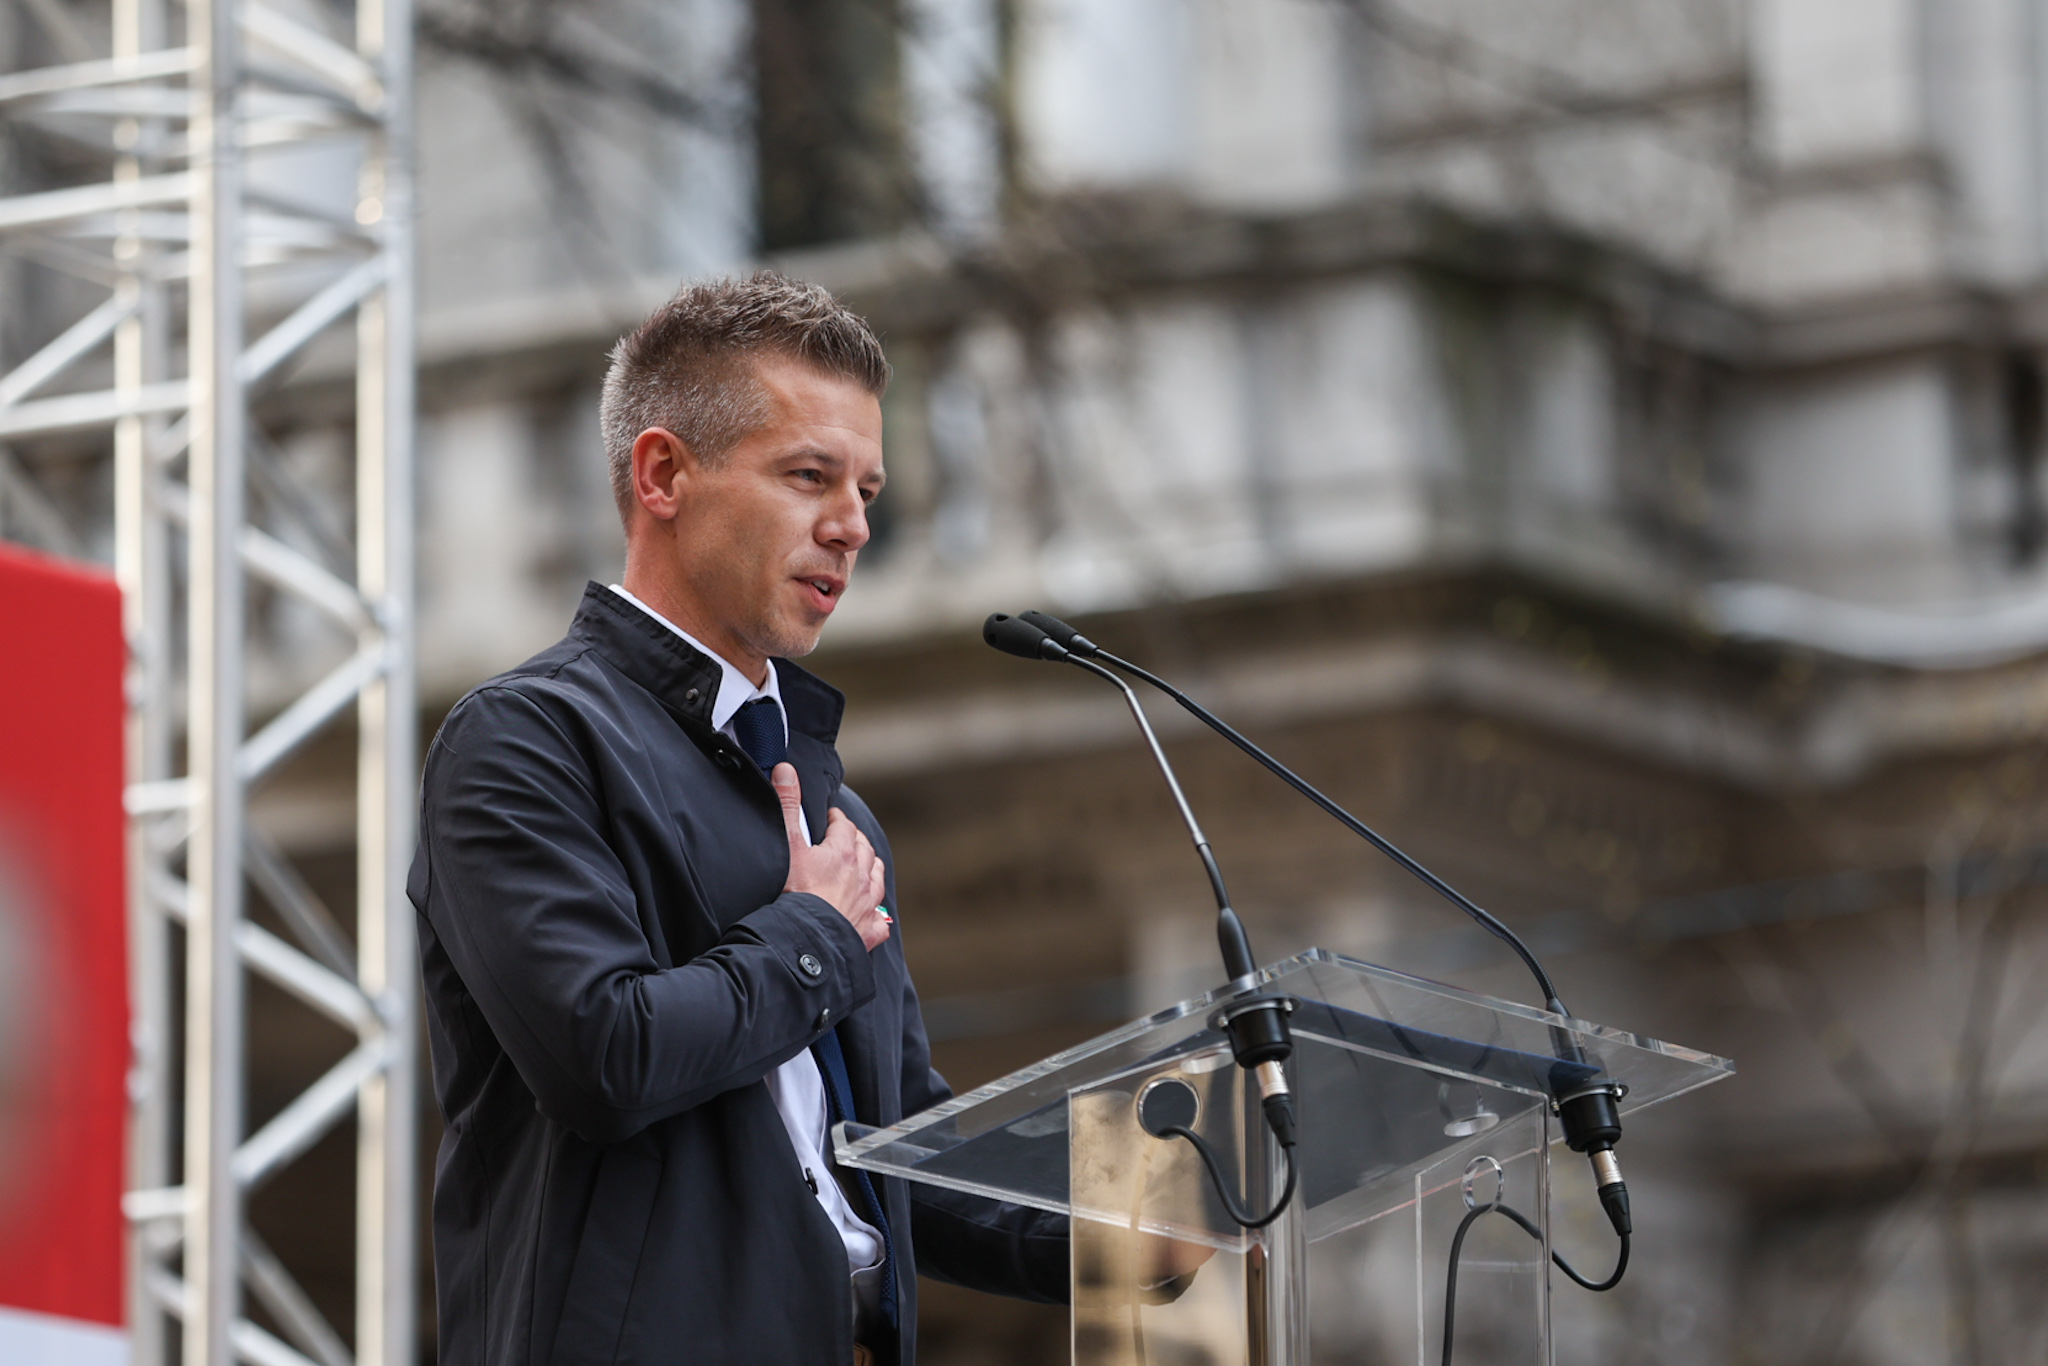 Magyar Péter: A volt igazságügyminiszter holnap elmondja, hogy miként működik az ügyészség és a hatalom